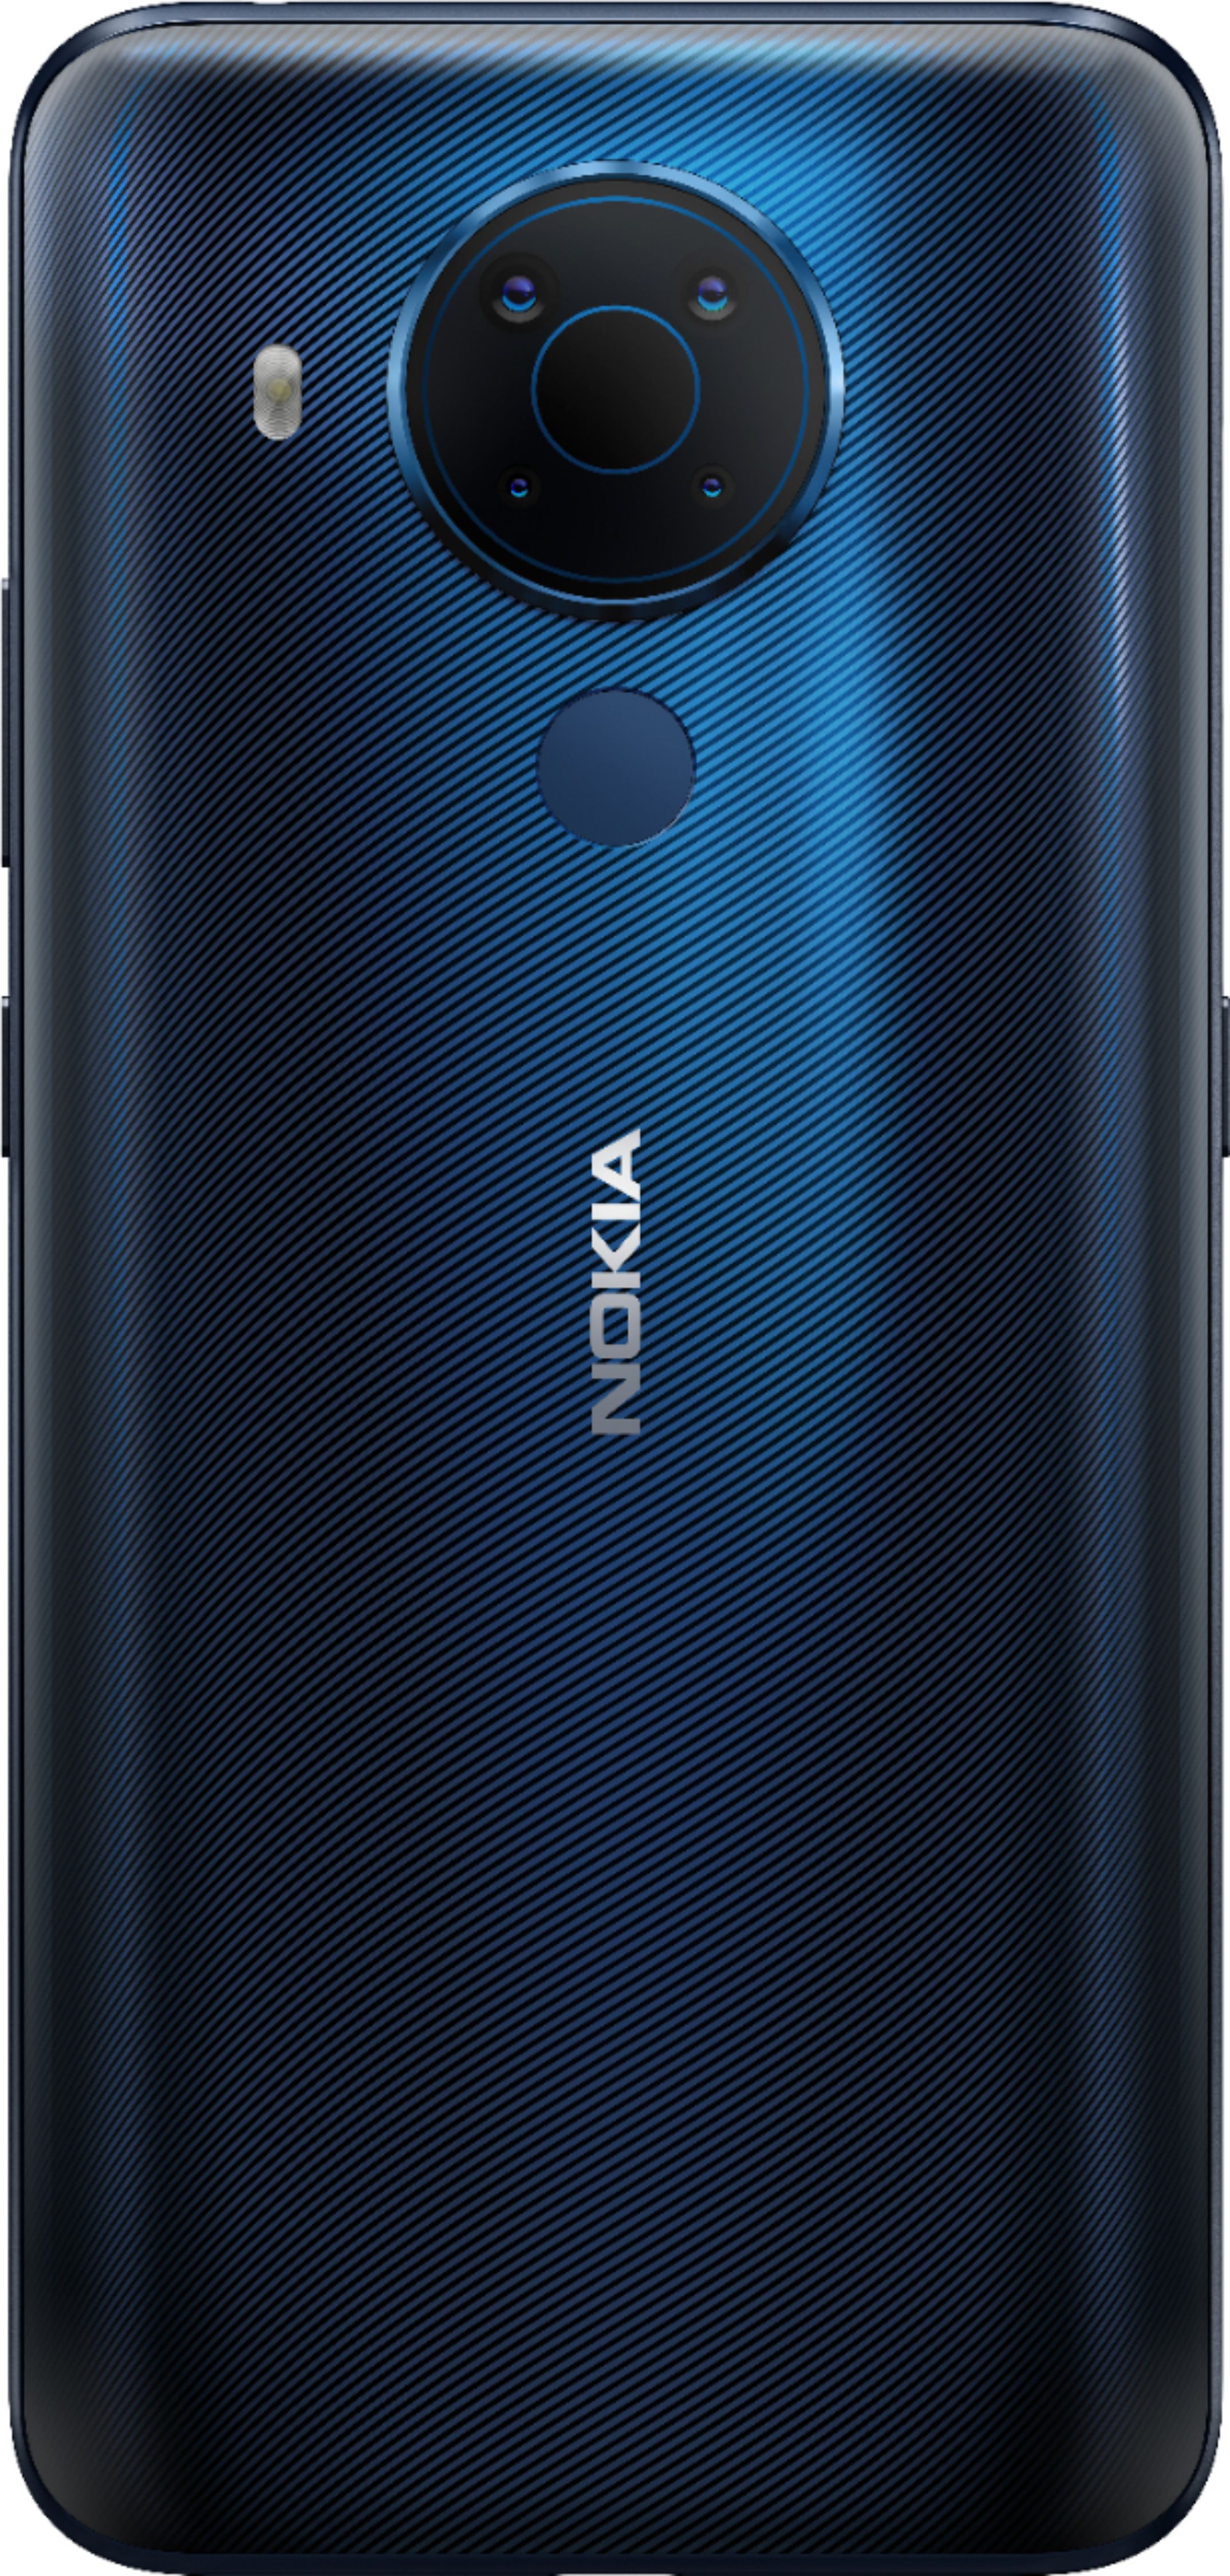 Angle View: Nokia - 5.4 128GB (Unlocked) - Polar Night